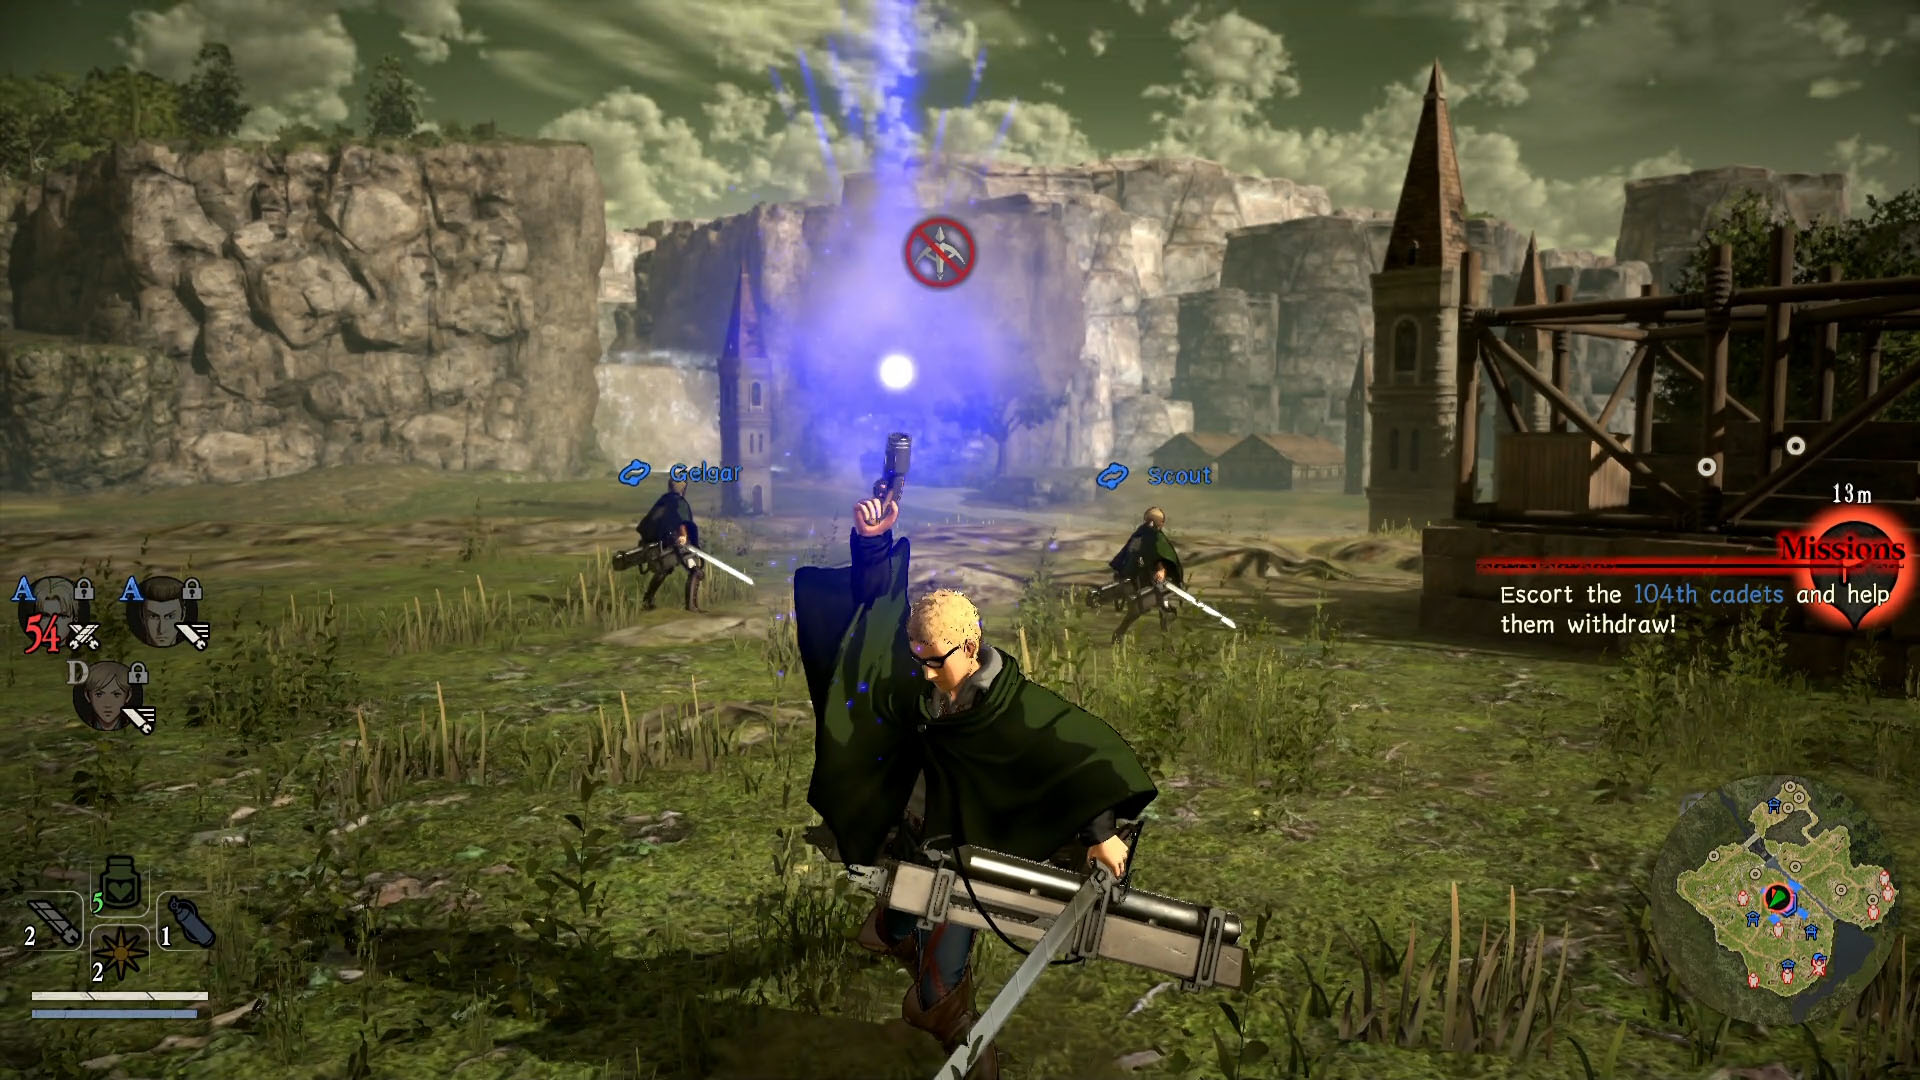 Attack on Titan Gets Online Game - Niche Gamer